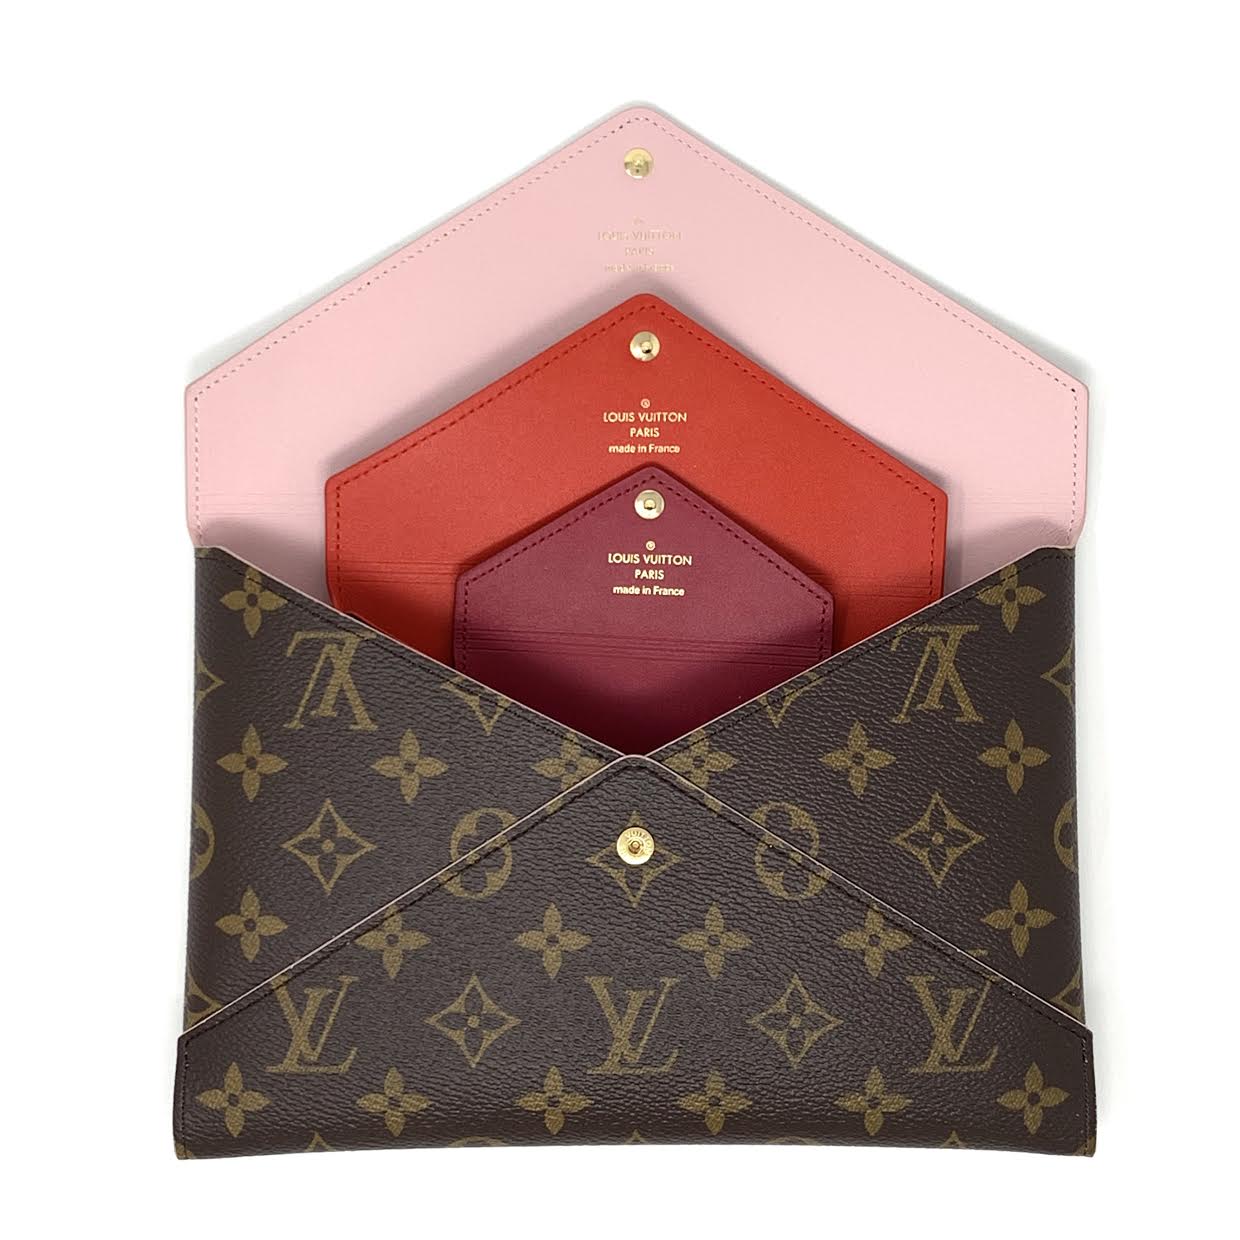 Louis Vuitton Pochette Kirigami in Monogram - SOLD